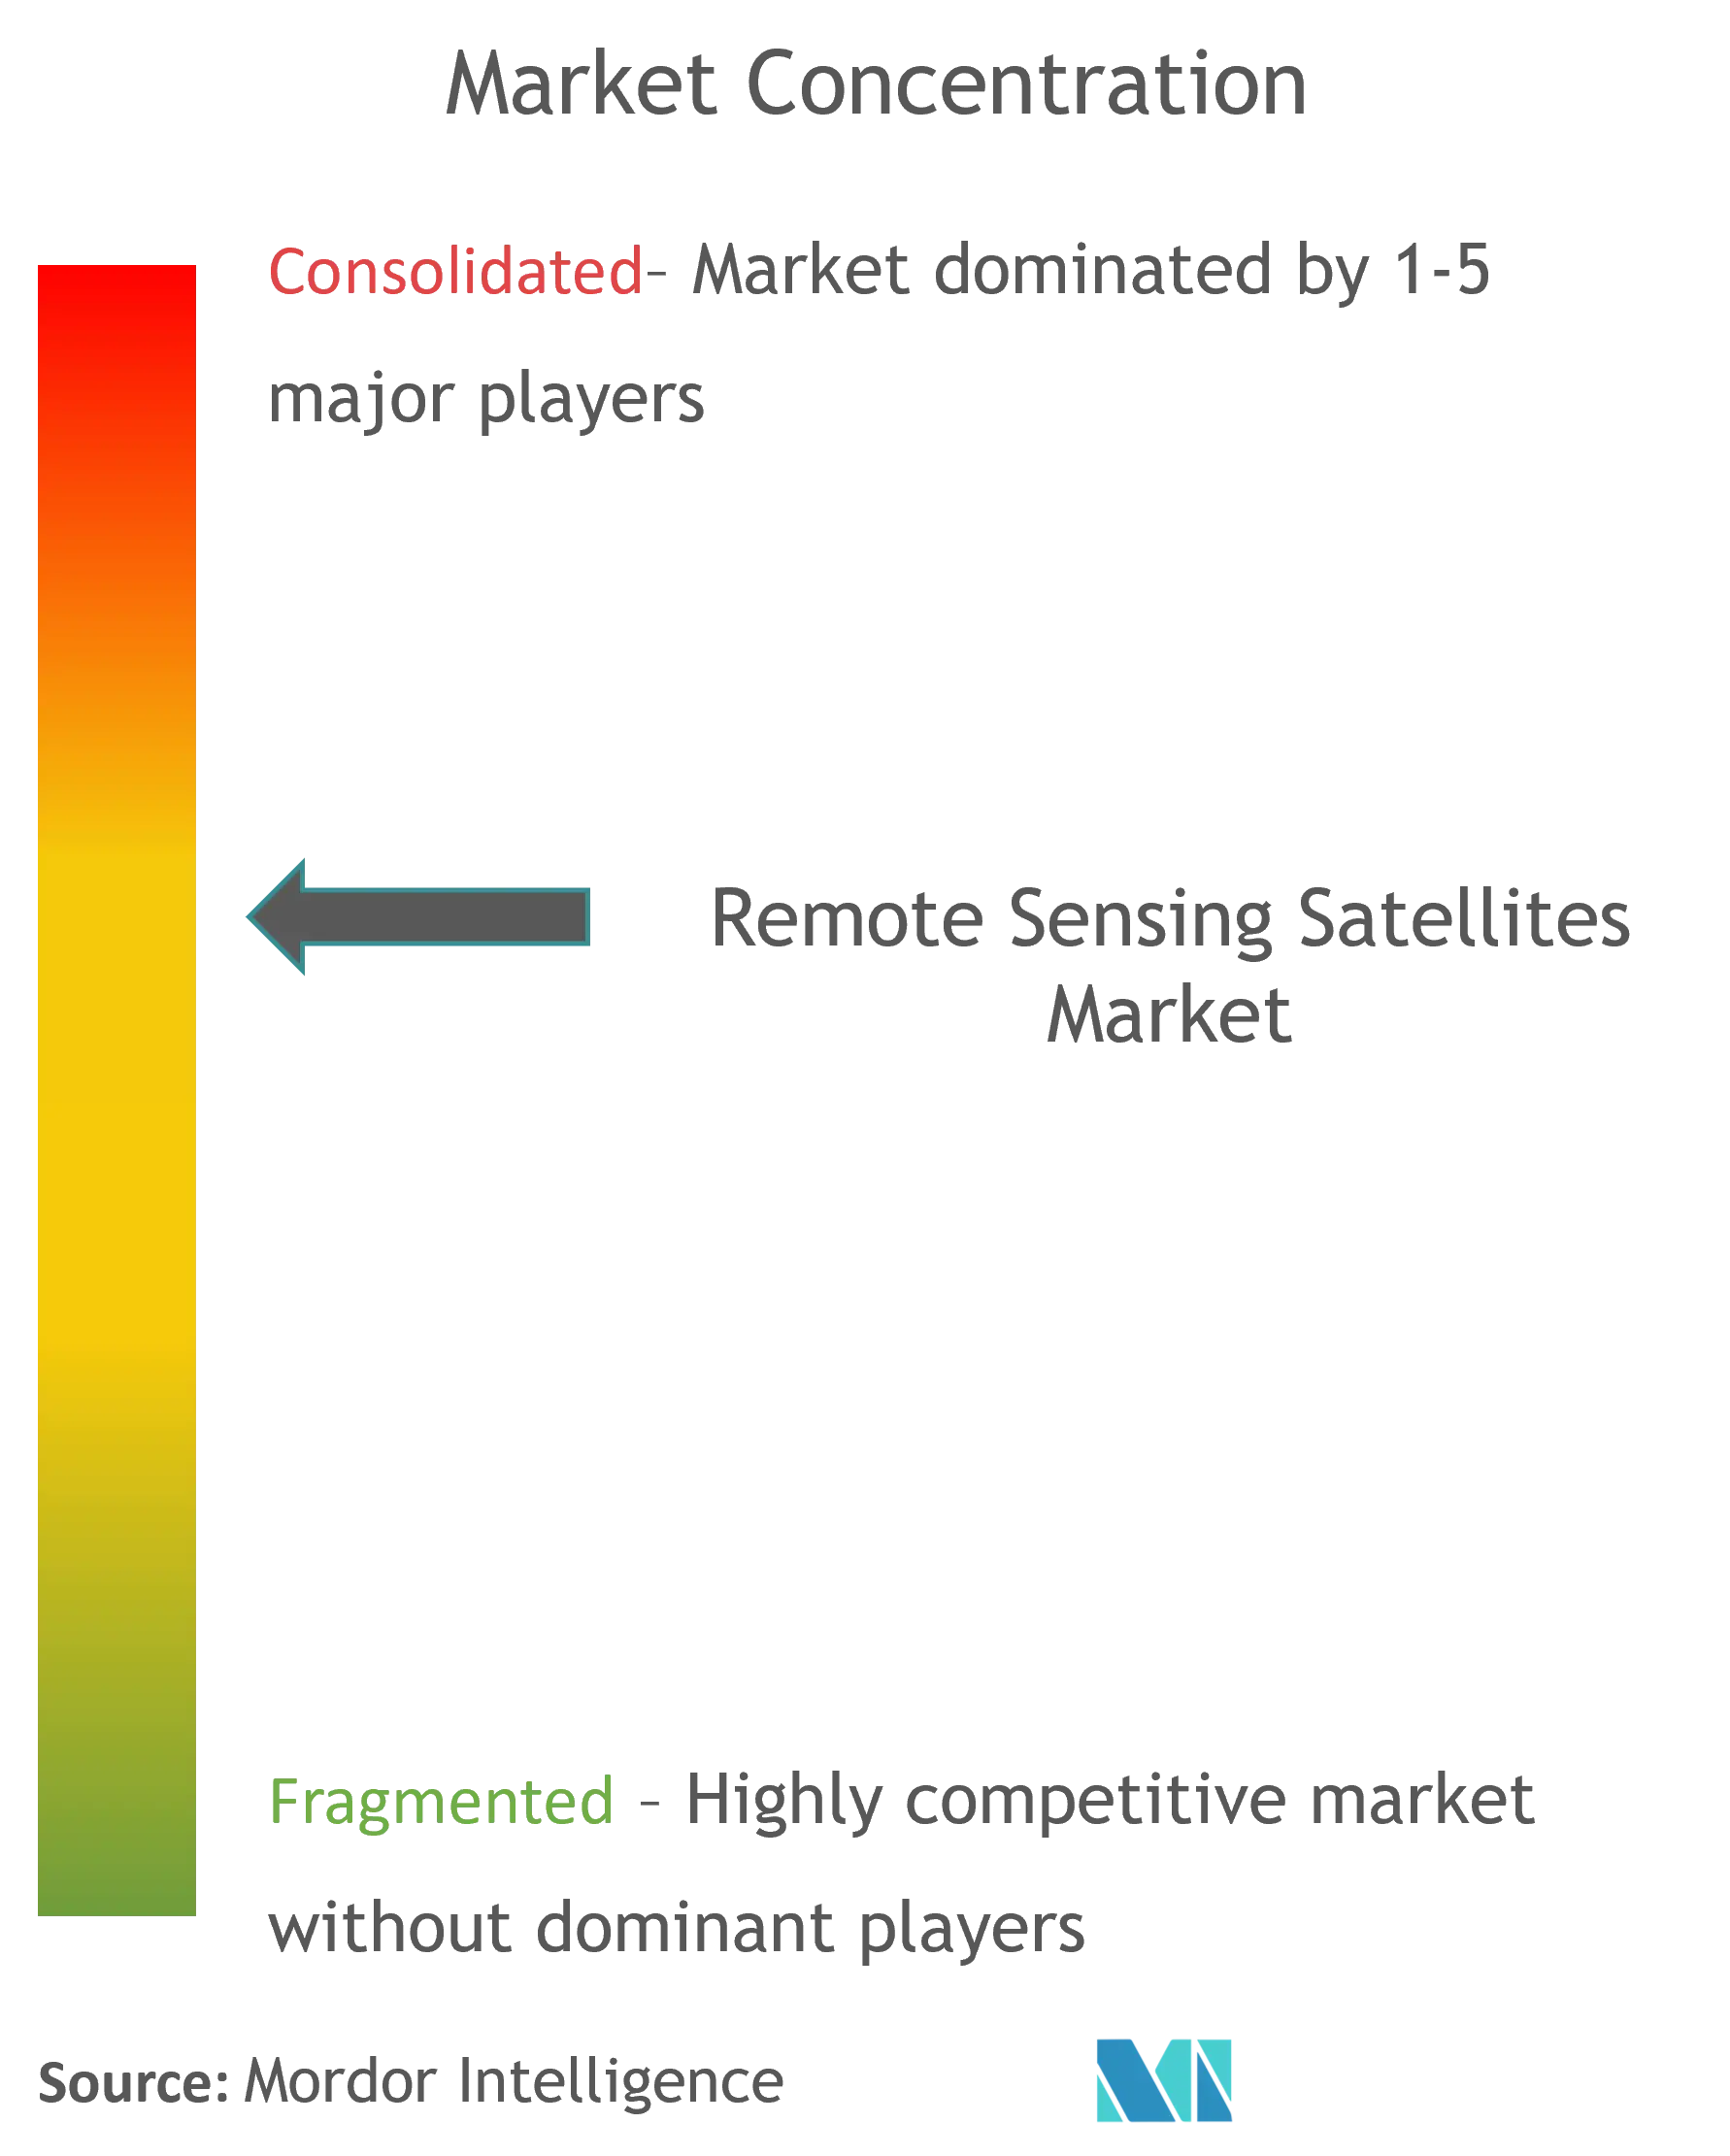 Remote Sensing Satellites Market Concentration